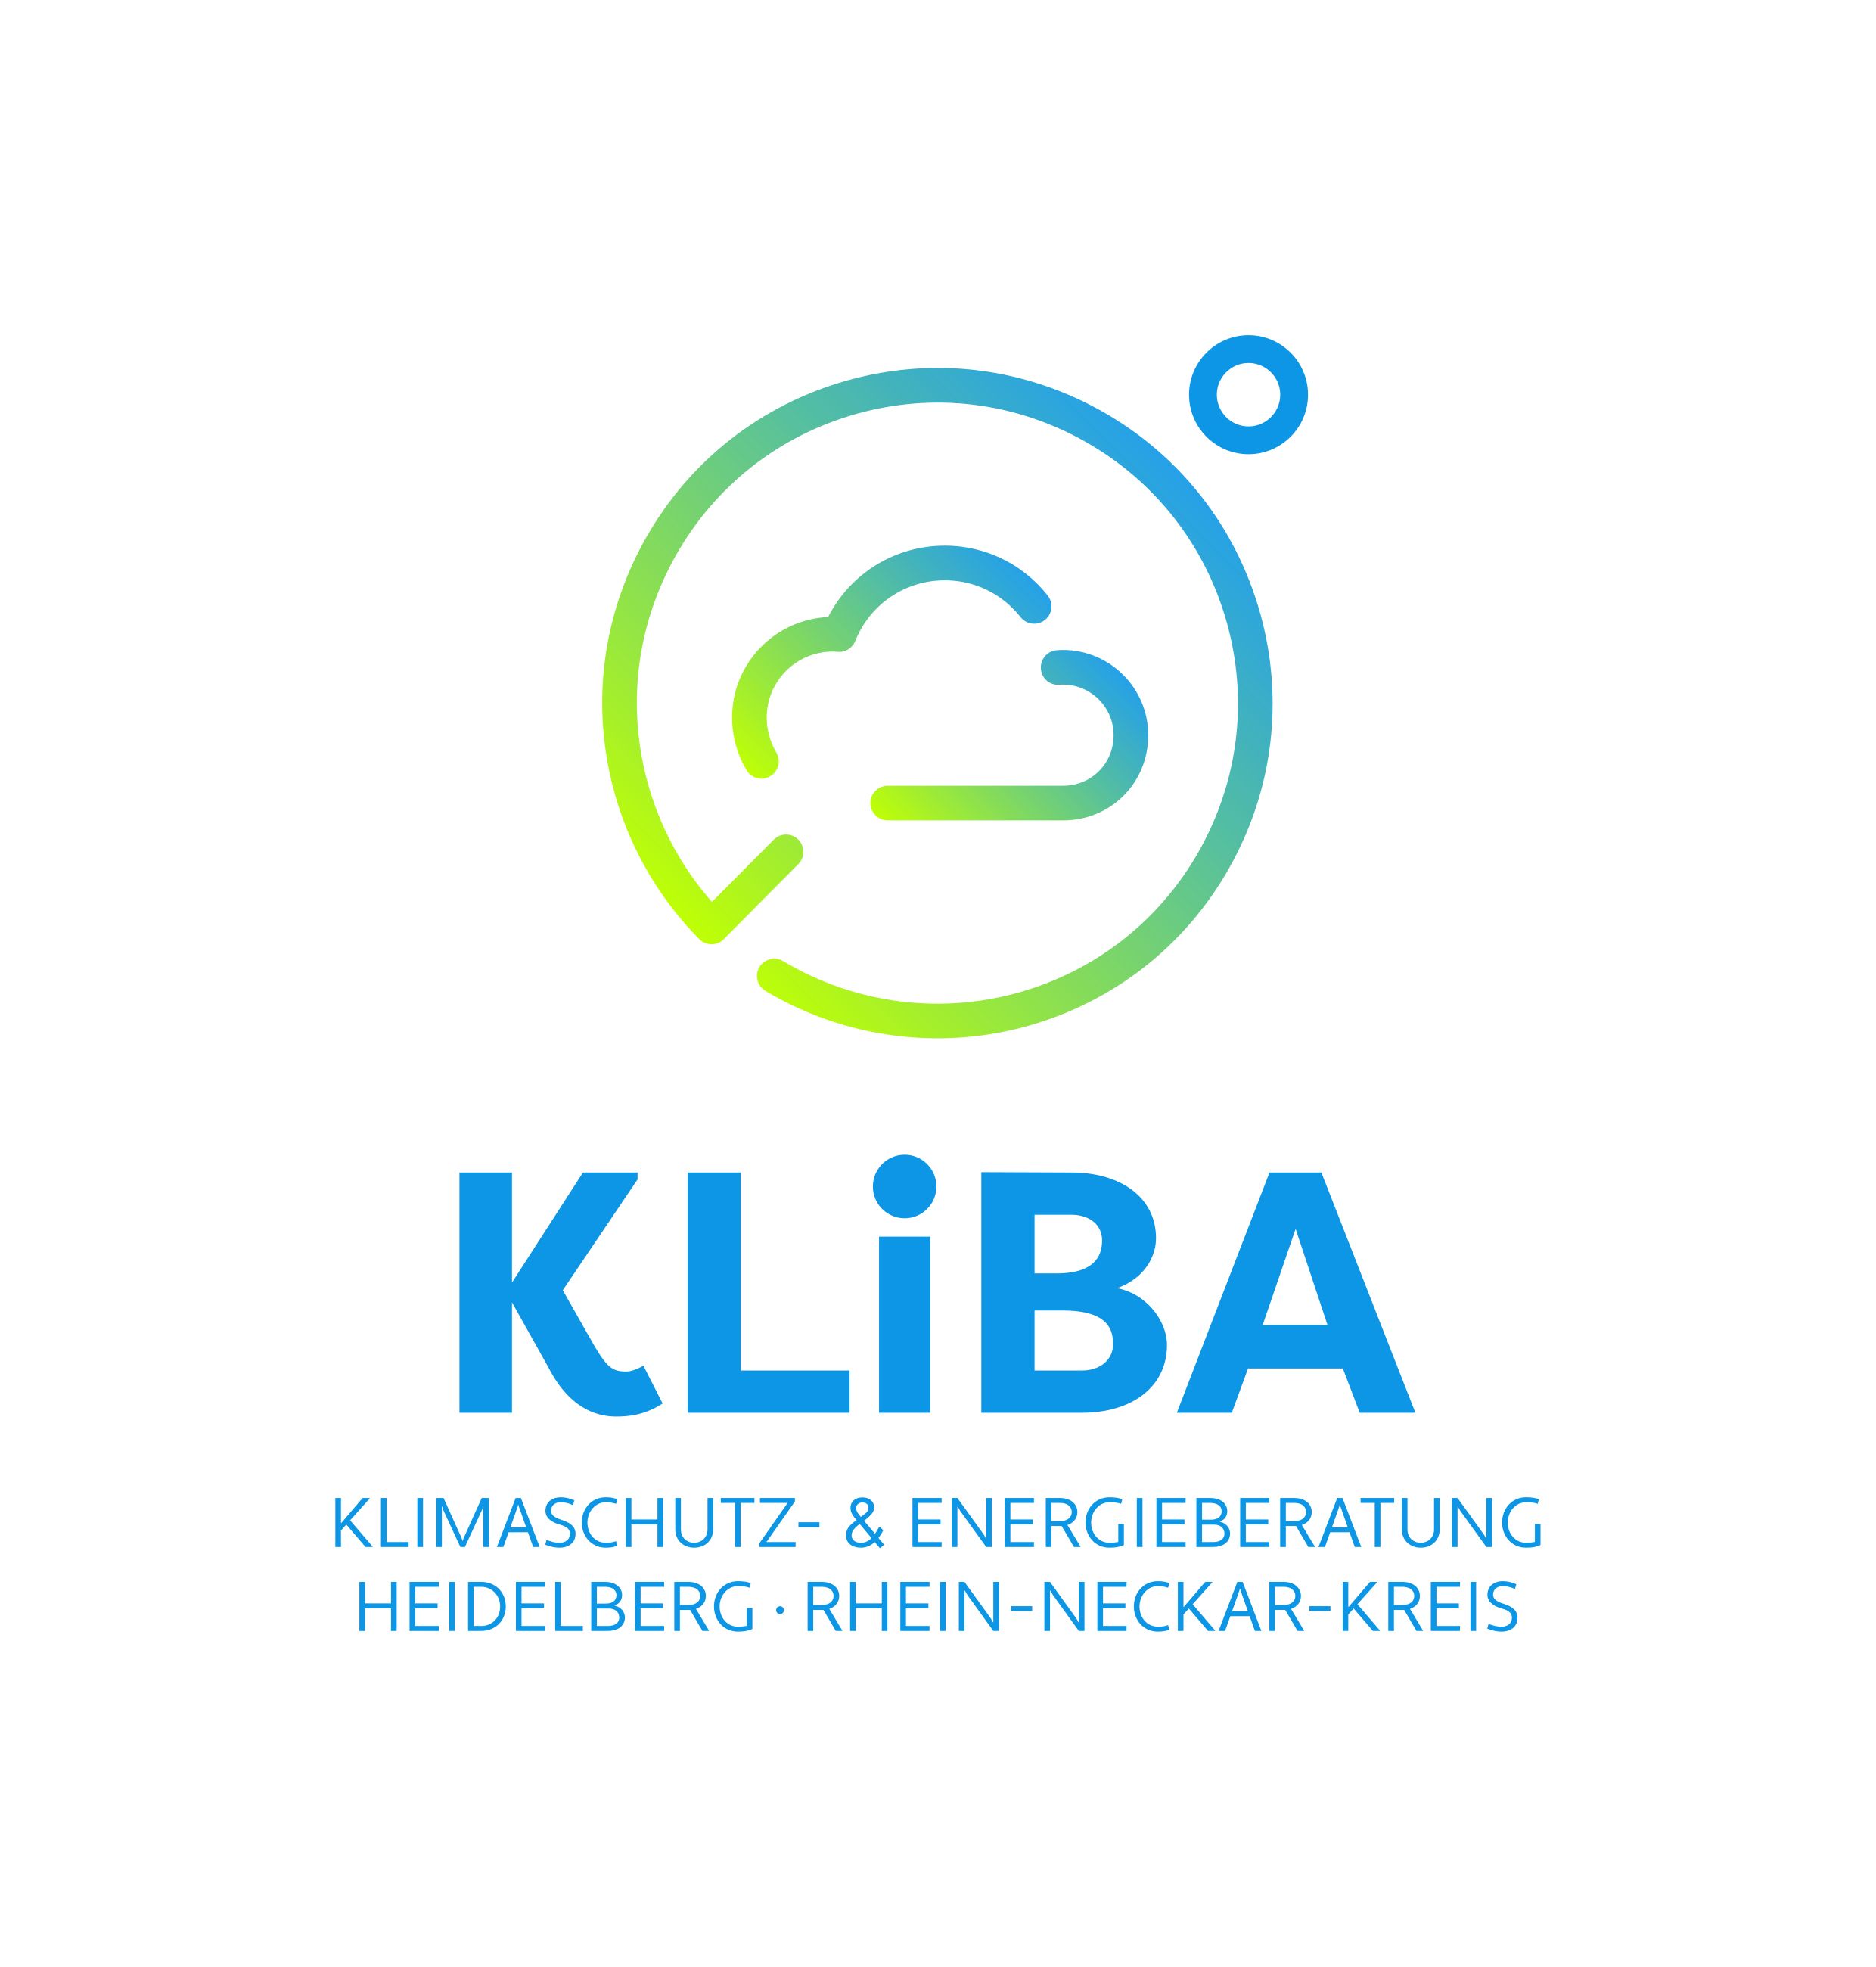 Logo KLiBA, Klimaschutz- und Energie-Beratungsagentur Heidelberg – Rhein-Neckar-Kreis gGmbH